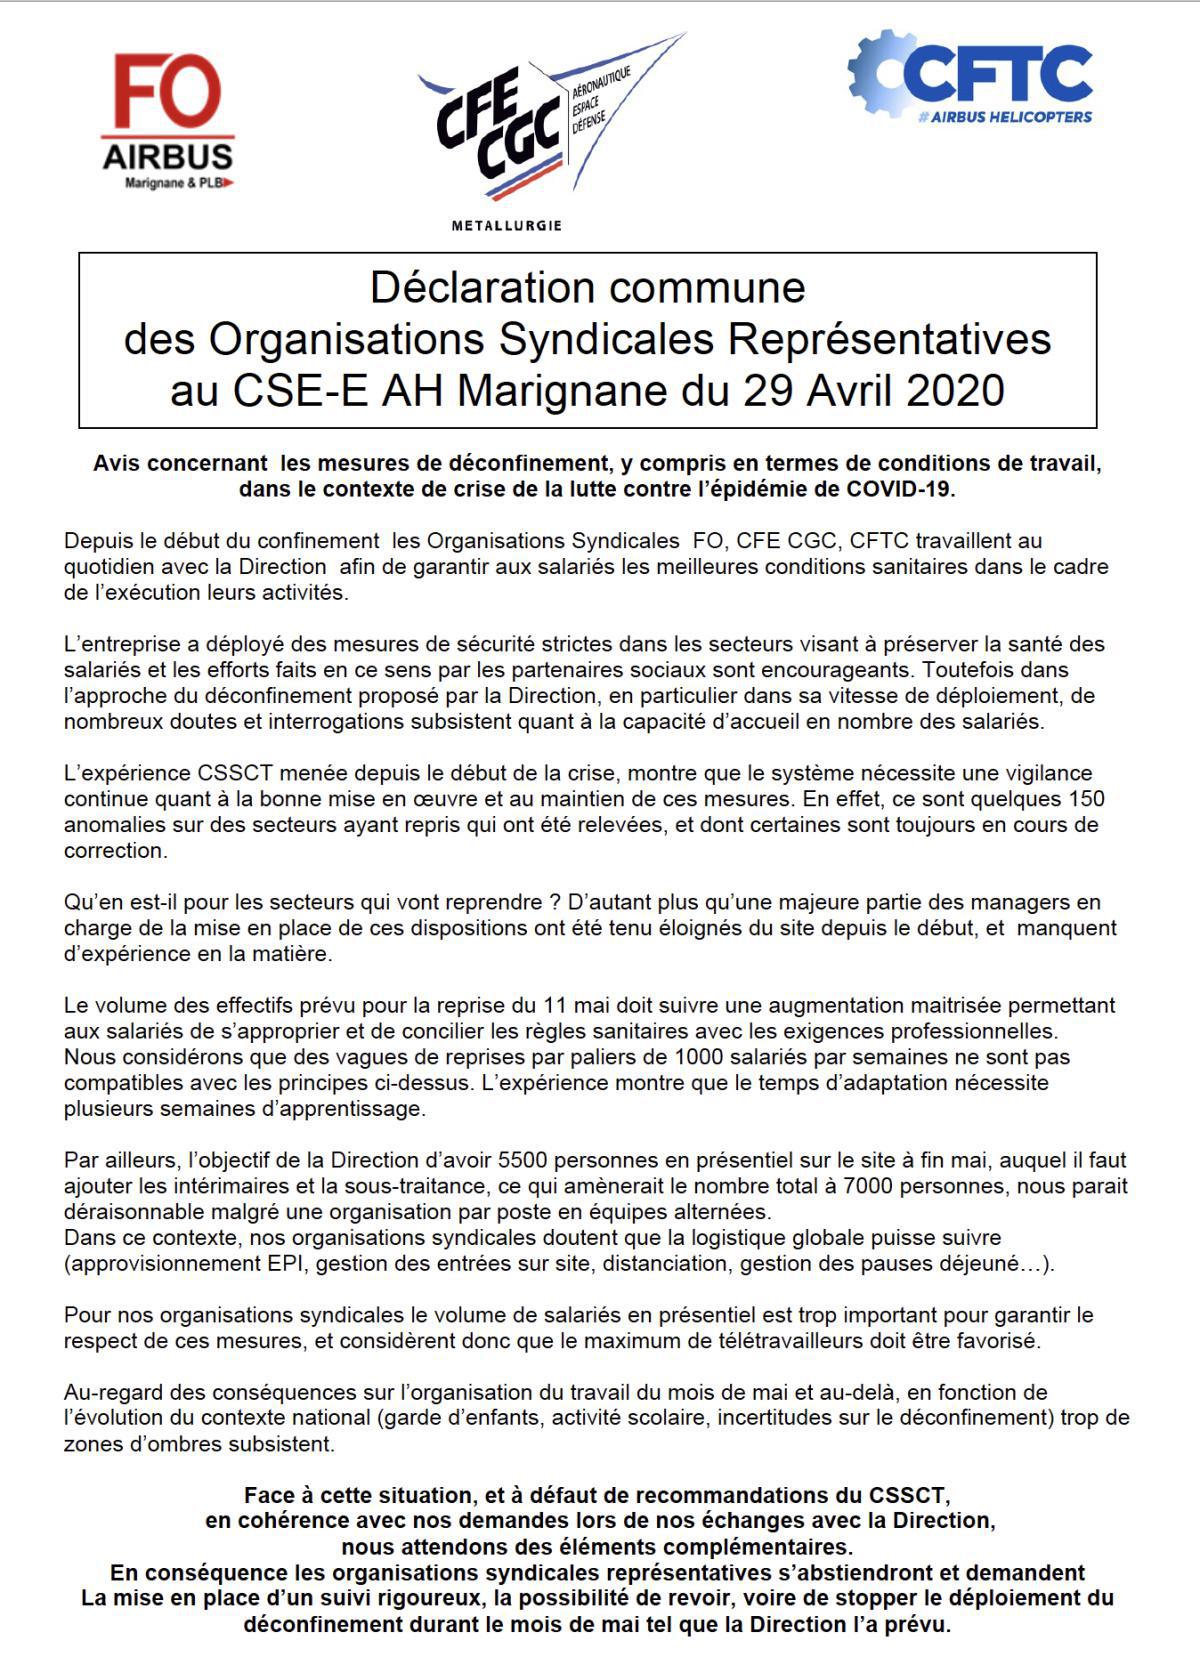 Déconfinement : déclaration des 3 organisations syndicales représentatives !